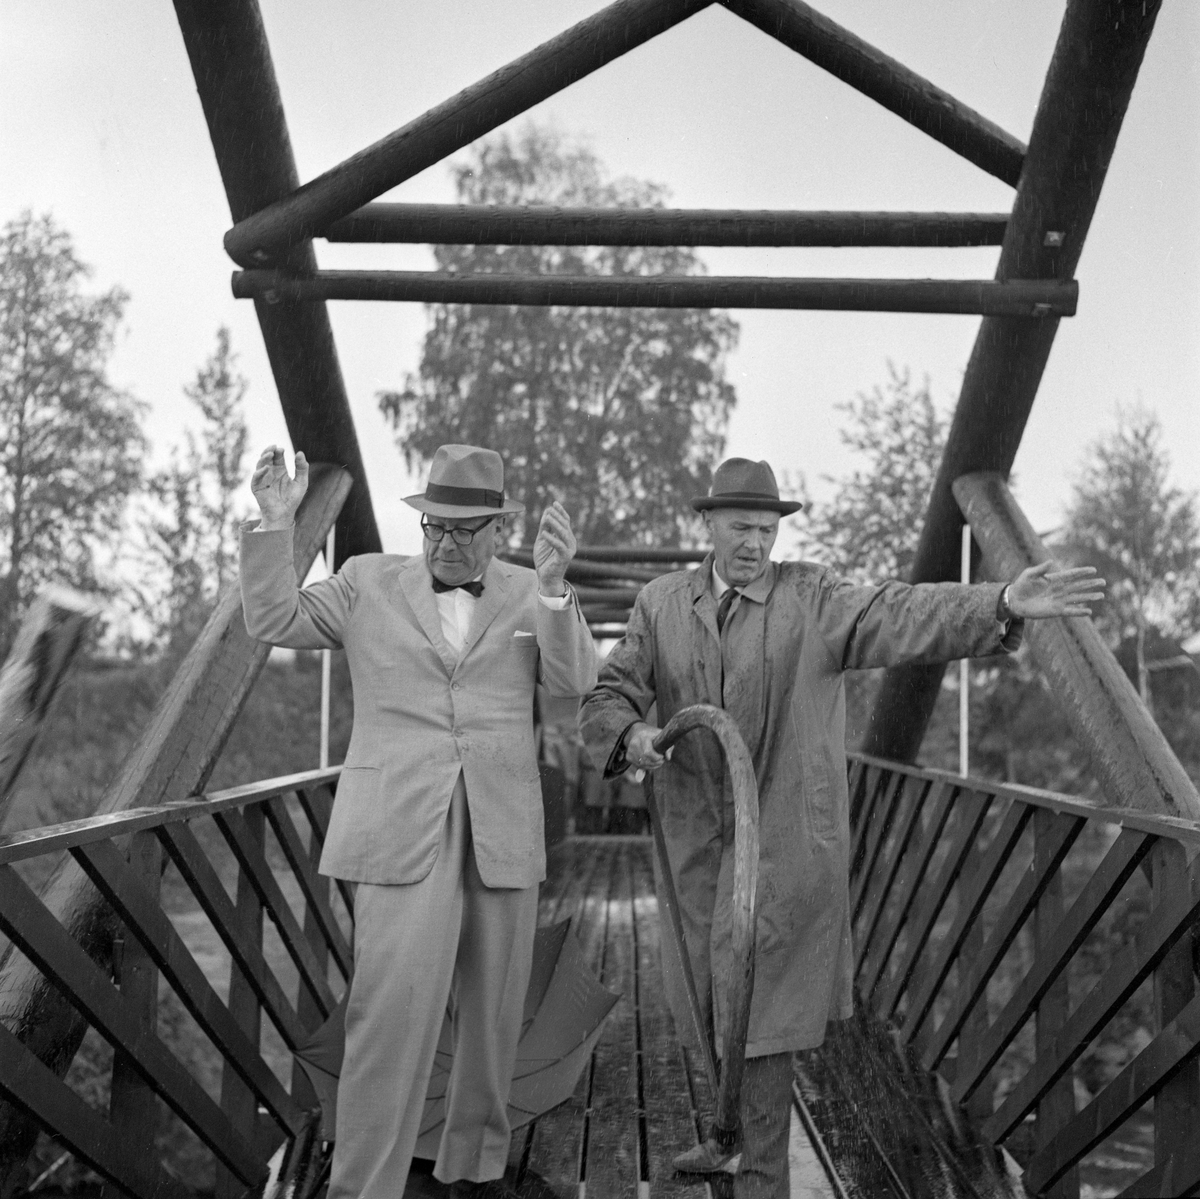 Fra åpningen av brua over Klokkerfossen i Glomma i Elverum (Hedmark) 30. juni 1964. Brua skulle forene det daværende Norsk Skogbruksmuseums friluftsavdeling på Prestøya med et nyerhvervet areal på klokkergarden Fossum, som lå på østsida av elva. De to mannene i forgrunnen er museets styreformann, Hans Th. Kiær (til venstre), og lederen i representantskapet, Eyvind Wisth. Sistnevnte hadde nettopp kappet en 8 meter lang stokk som var lagt på tvers over brua som et symbolsk stengsel. Han utførte denne oppgaven med ei antikvarisk bogesag fra museets samling. Da de to halvdelene av stokken falt i fossen, på hver sin side av brua, skal Wisth ha deklamert følgende godt forberedte utsagn: «Denne symbolske handling betyr et tidsskifte, og den nye brua binder museets samlinger på Klokkergården sammen med det egenartede miljø som er skapt på Prestøya. Den åpner for nye muligheter i den videre utvikling og gjør Skogbruksmuseet til sin egen herre.» Det siste refererte antakelig til at Norsk Skogbruksmuseums friluftsavdeling med dette ble tilgjengelig uavhengig av Glomdalsmuseet, fra en ny innkjørsel mot Solørvegen på østsida av Glomma. 

Arbeidet for å få bygd bru over Klokkerfossen startet i 1961, samtidig med at det ble igangsatt en prosess for å skaffe Norsk Skogbruksmuseum arealer for videreutvikling av virksomheten på østsida av Glomma. Museet søkte råd ved Hedmark vegkontor og i Glomma fellesfløtingsforening. Fløtingsforeningen krevde at brulegemets underkant måtte plasseres minst en meter over den høyden 1934-flommen hadde hatt. Grunnarbeidet ble påbegynt i 1963. Da forelå det tre ulike alternativer for hvordan brua skulle bygges. Det lokale entreprenørselskapet Martin M. Bakken tilbød en heltrekonstruksjon, Moelven Brug kunne levere en limtrekonstruksjon og Norsk Gjærde- og Metalldukfabrikk lanserte ei hengebru i stål. Arbeidsutvalget fra museets styre gikk enn for en såkalt tømmersprengverkskonstruksjon som arkitektfirmaet Arkitim på Hamar hadde modellert. Denne løsningen ble valgt både fordi den var prisgunstig, fordi tømmerkonstruksjonen var estetisk tiltalende og fordi materialet passet godt på et Skogbruksmuseum. Brua fikk fire spenn mellom frittstående støpte brukar samt mot støpte landkar. Den samlete lengden ble 108 meter. Det kostet 155 000 kroner å få reist dette bindeleddet mellom Prestøya og det nye museumsmrådet på klokkergarden Fossum. Trekonstruksjonene i brua ble fornyet i 2005.